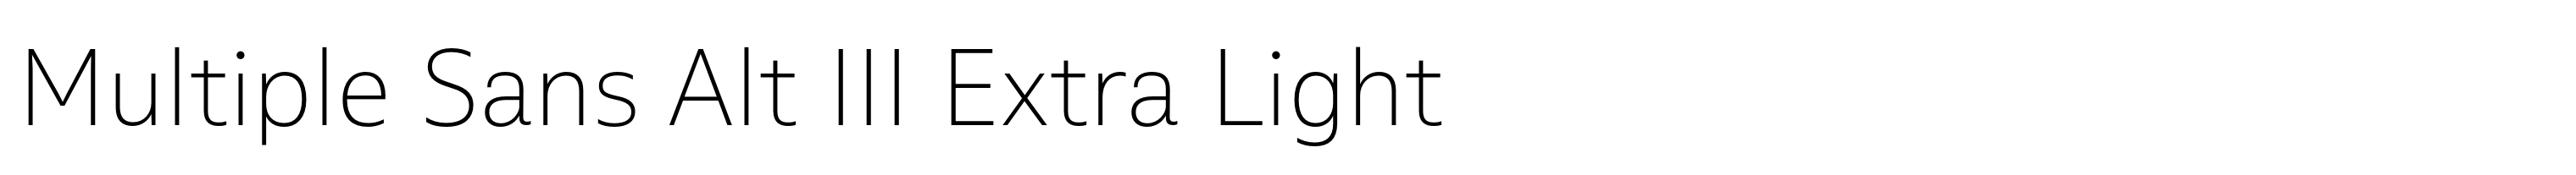 Multiple Sans Alt III Extra Light